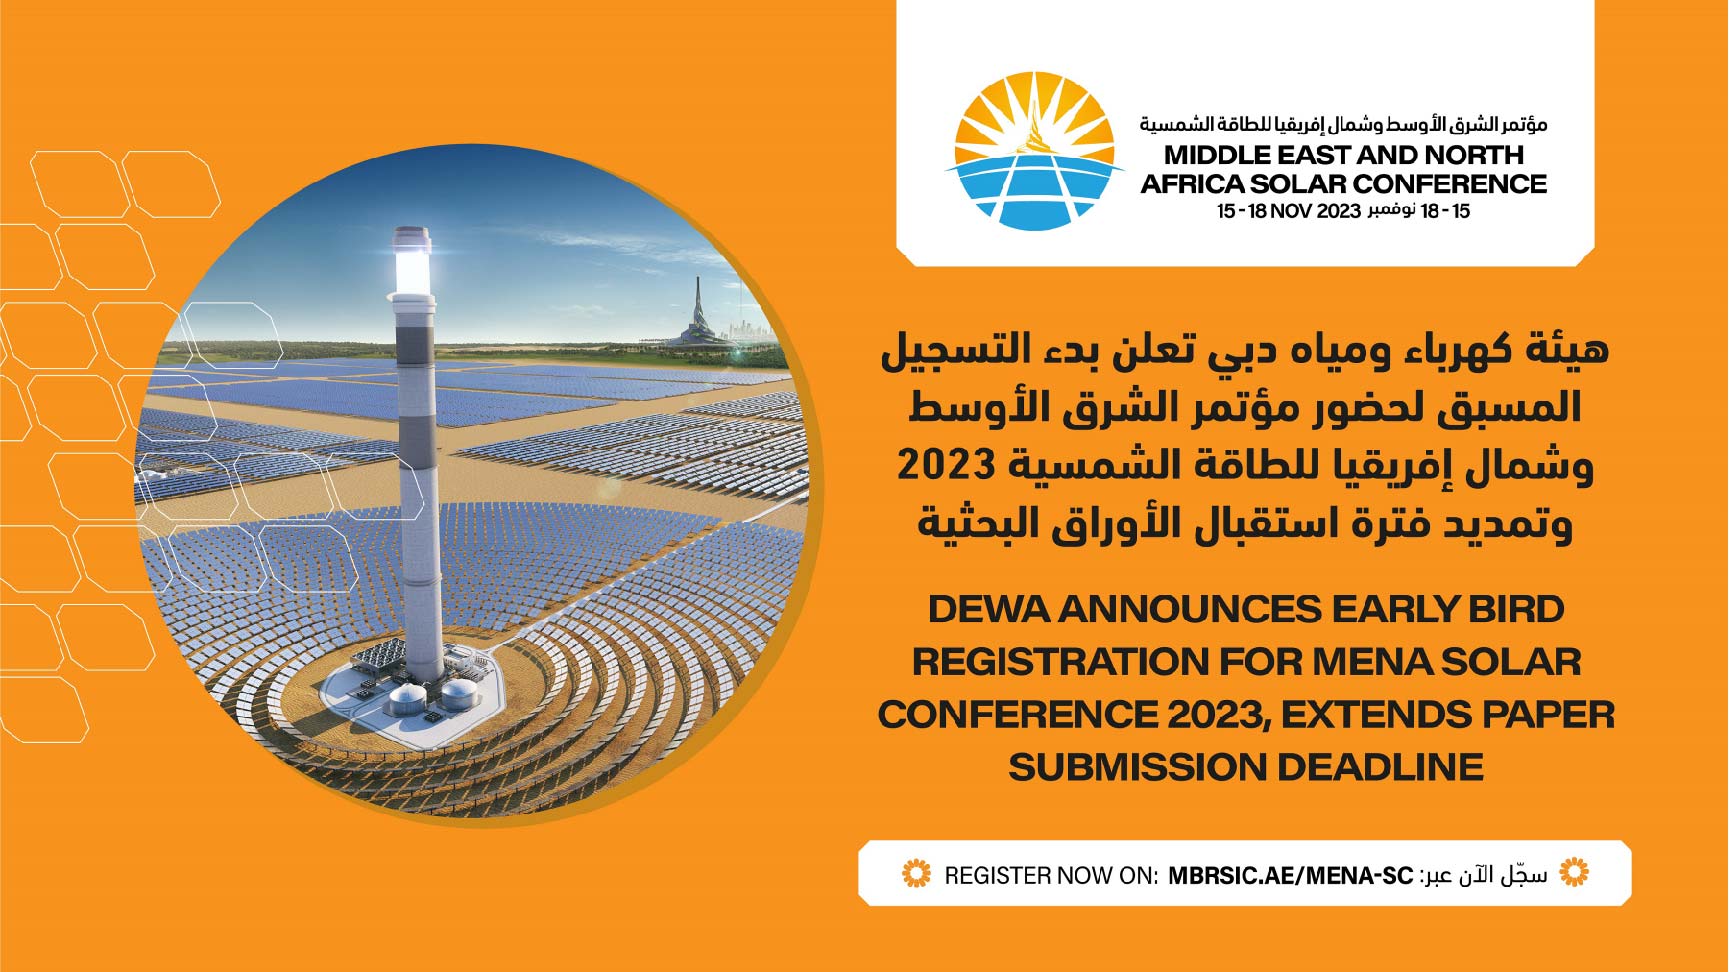 هيئة كهرباء ومياه دبي تعلن بدء التسجيل المسبق لحضور مؤتمر الشرق الأوسط وشمال إفريقيا للطاقة الشمسية 2023 وتمديد فترة استقبال الأوراق البحثية